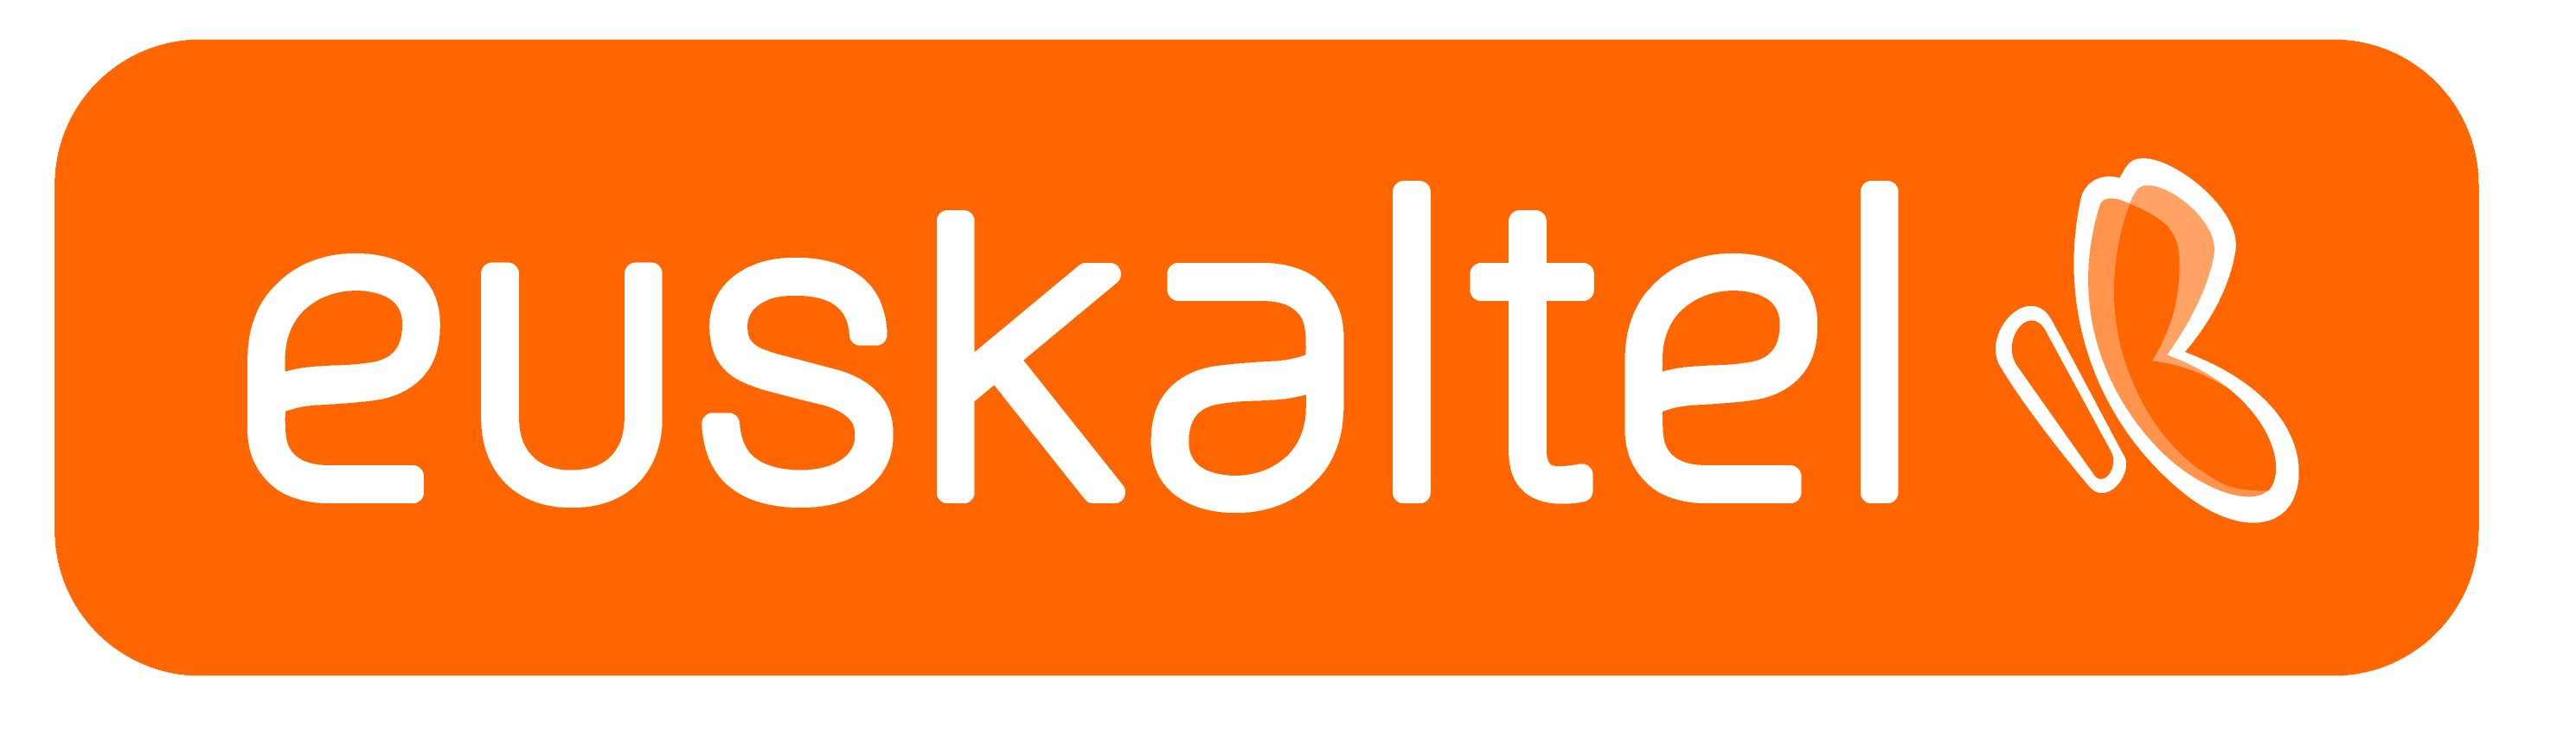 Euskaltel Brand Logo